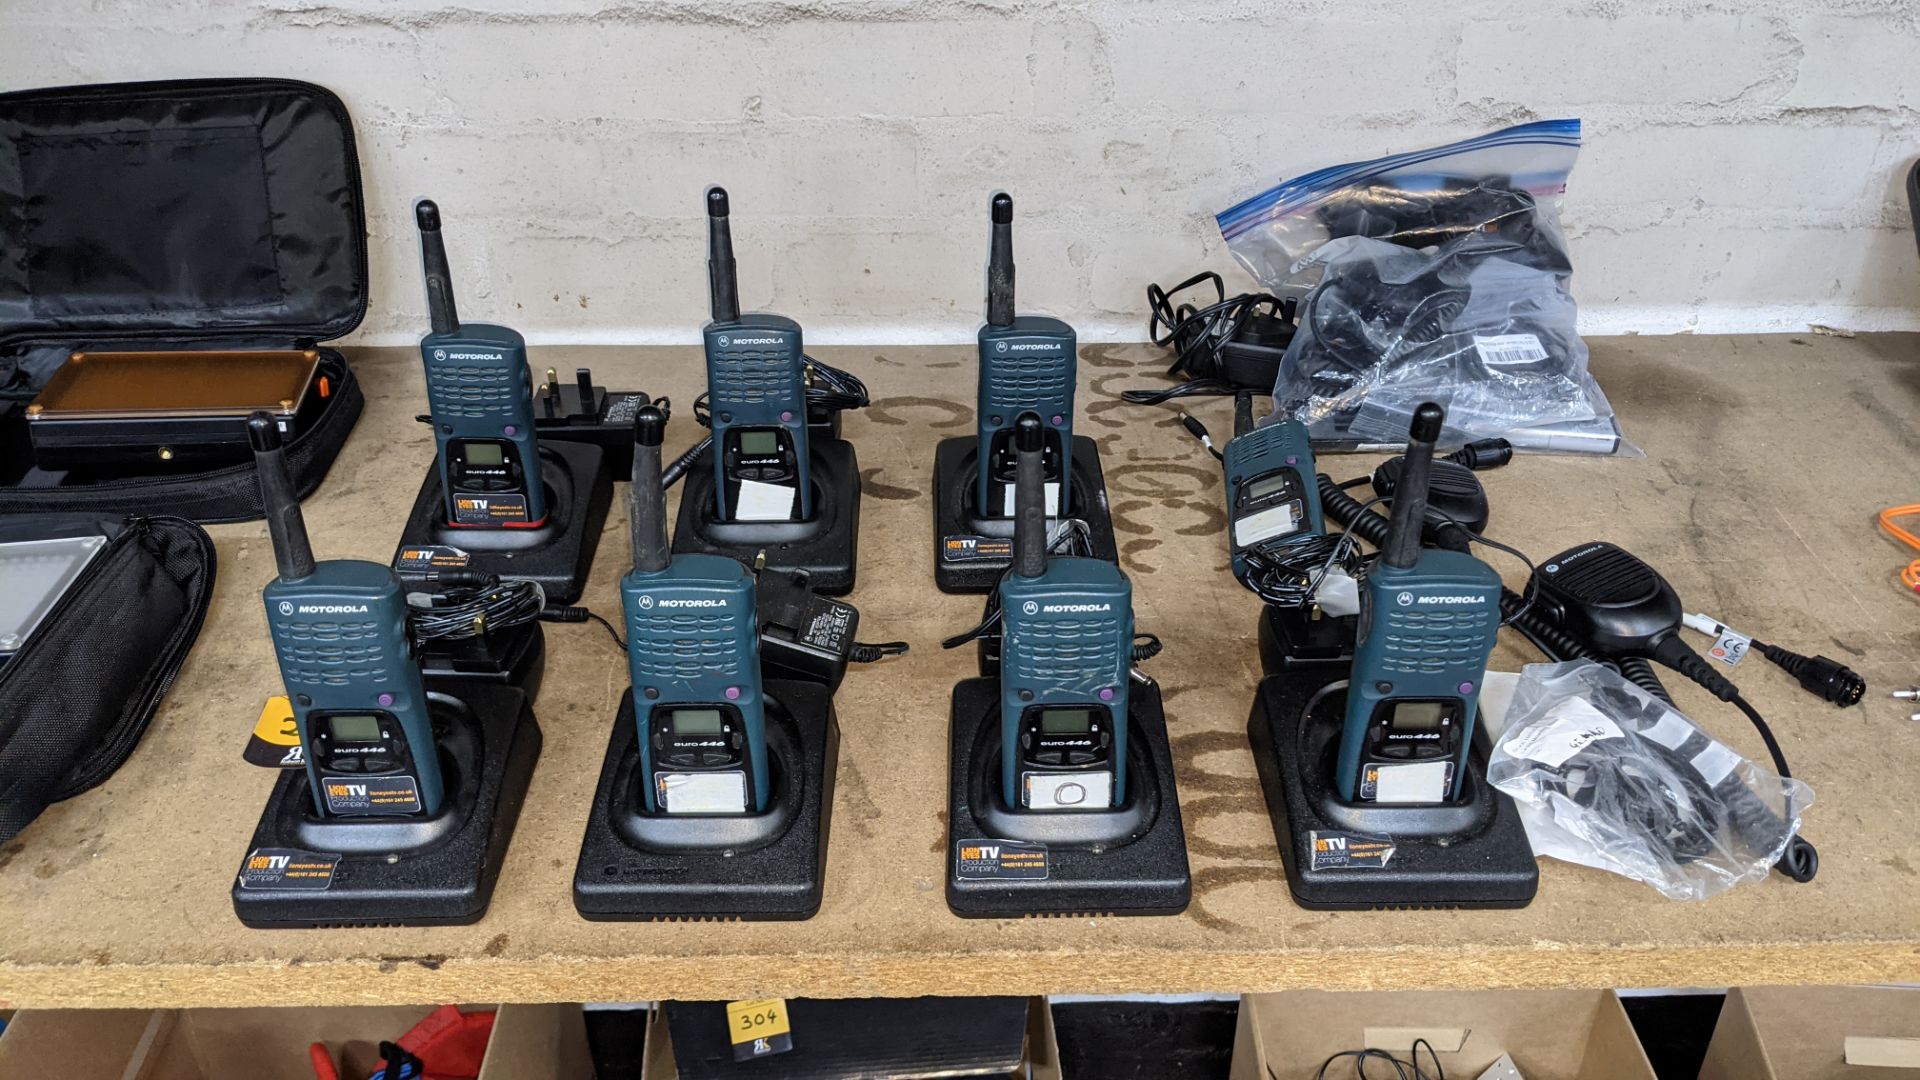 8 off Motorola walkie-talkies, model Euro 446 plus 7 base stations, 6 power packs, 2 hand-held wired